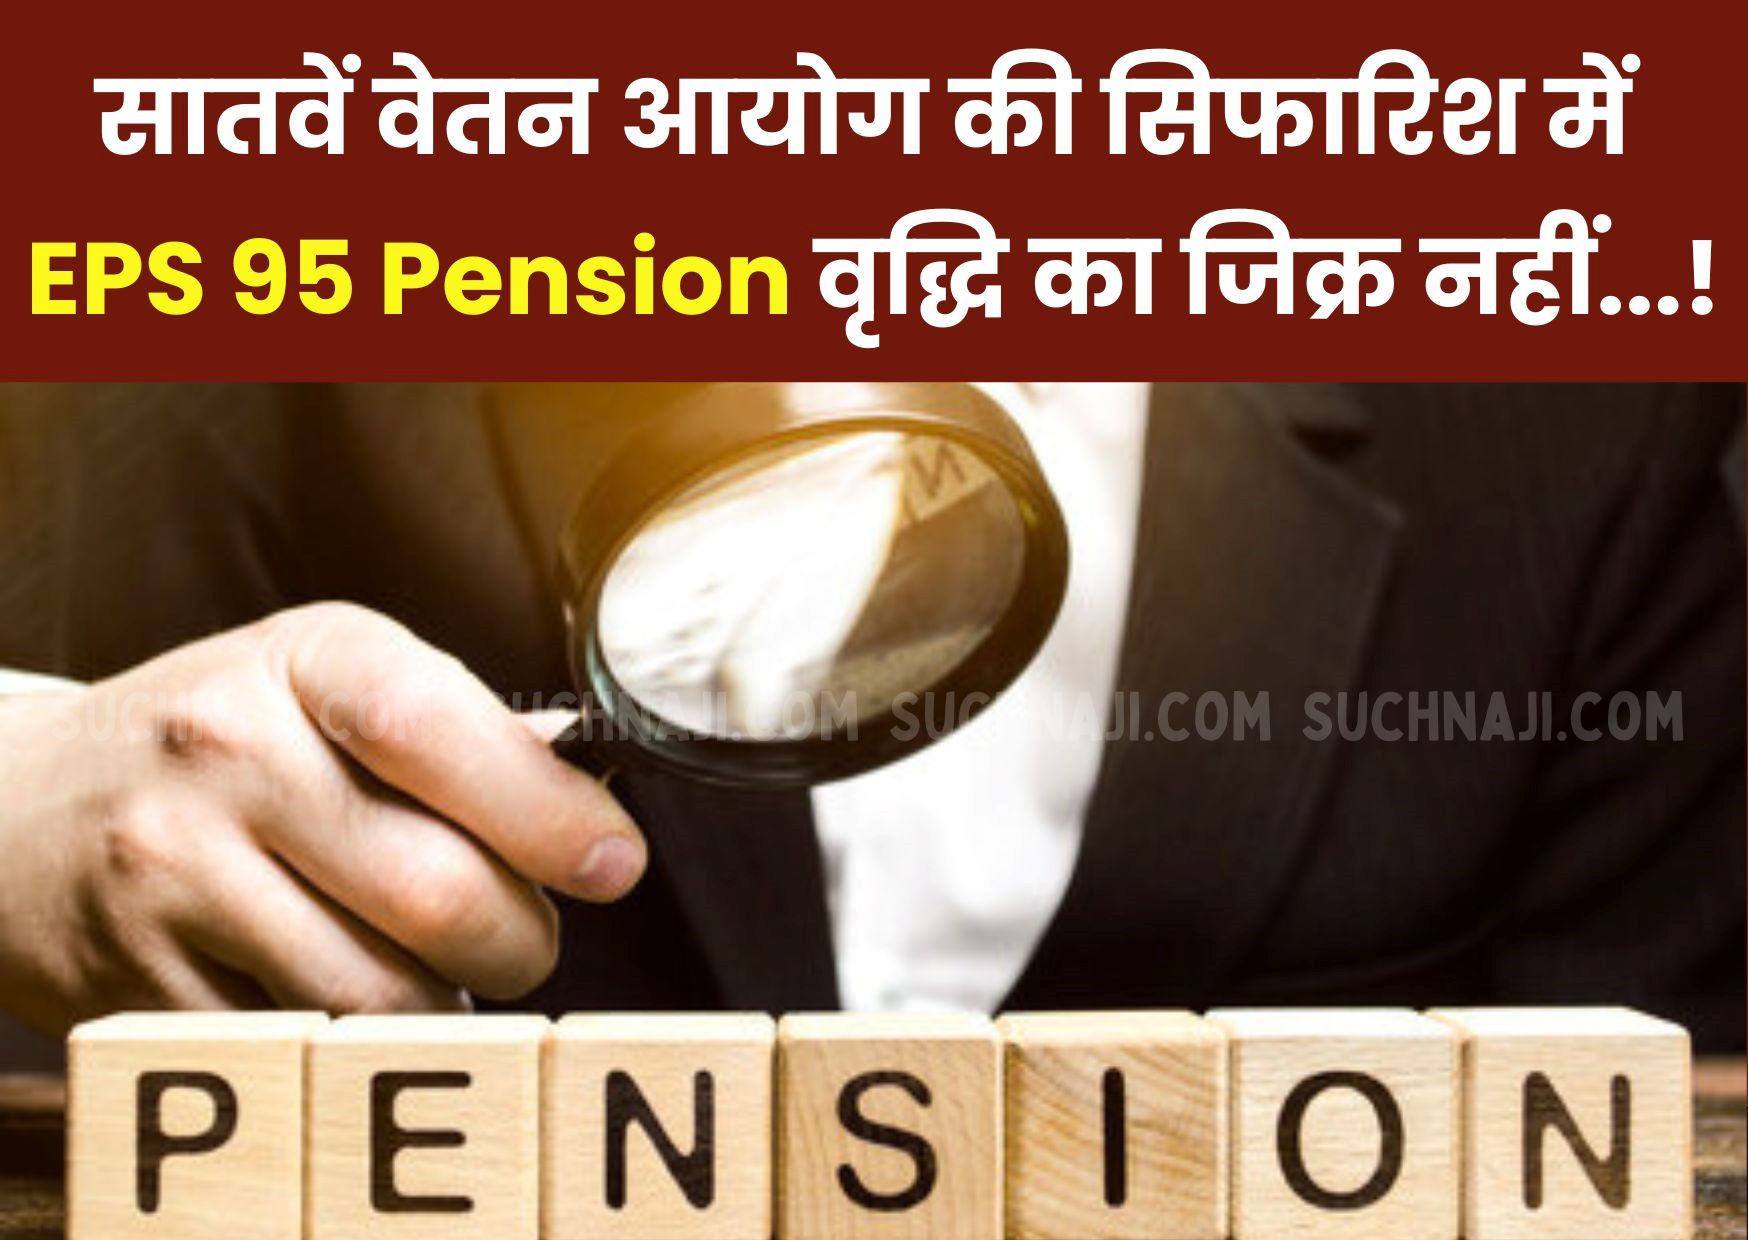 Employees Provident Fund Organisation: पेंशनर्स का दावा-सातवें वेतन आयोग की सिफारिश में EPS 95 Pension वृद्धि का कोई उल्लेख नहीं